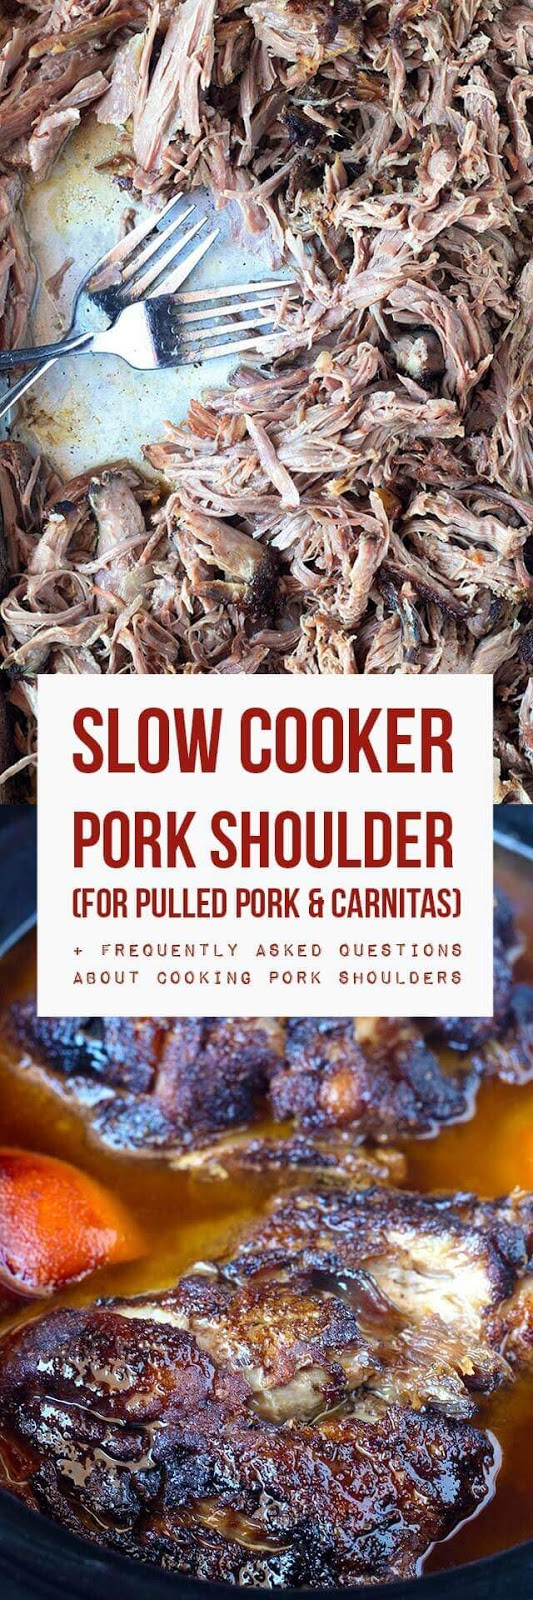 Pork Shoulder Slow Cooker Carnitas
 Slow Cooker Pork Shoulder For Pulled Pork & Carnitas